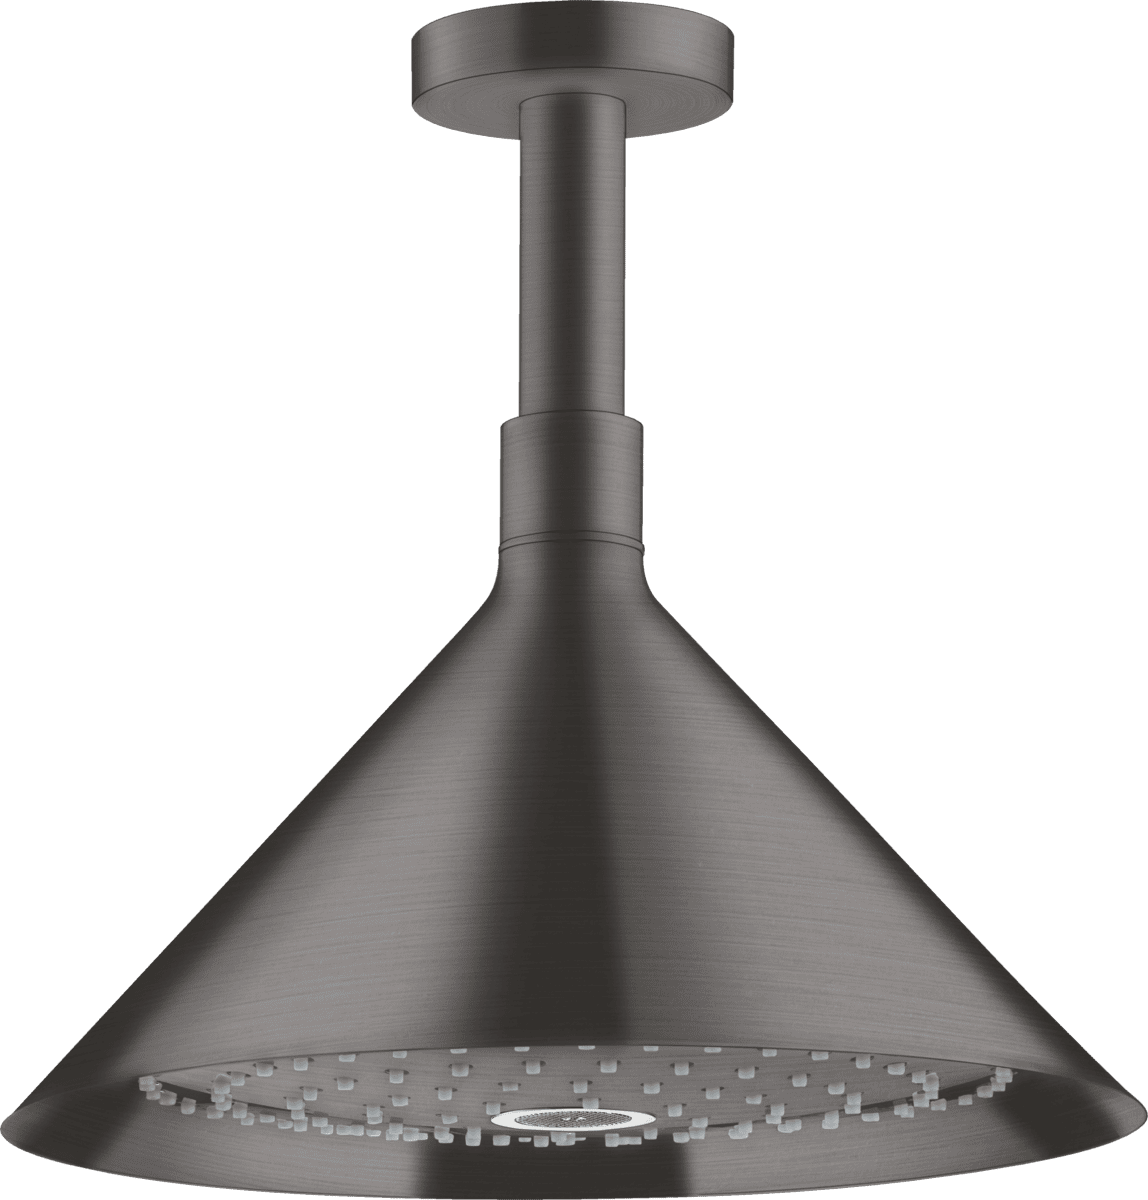 HANSGROHE AXOR Showers/Front Tepe duşu 240 2jet, tavan bağlantısı ile #26022340 - Mat Siyah Krom resmi